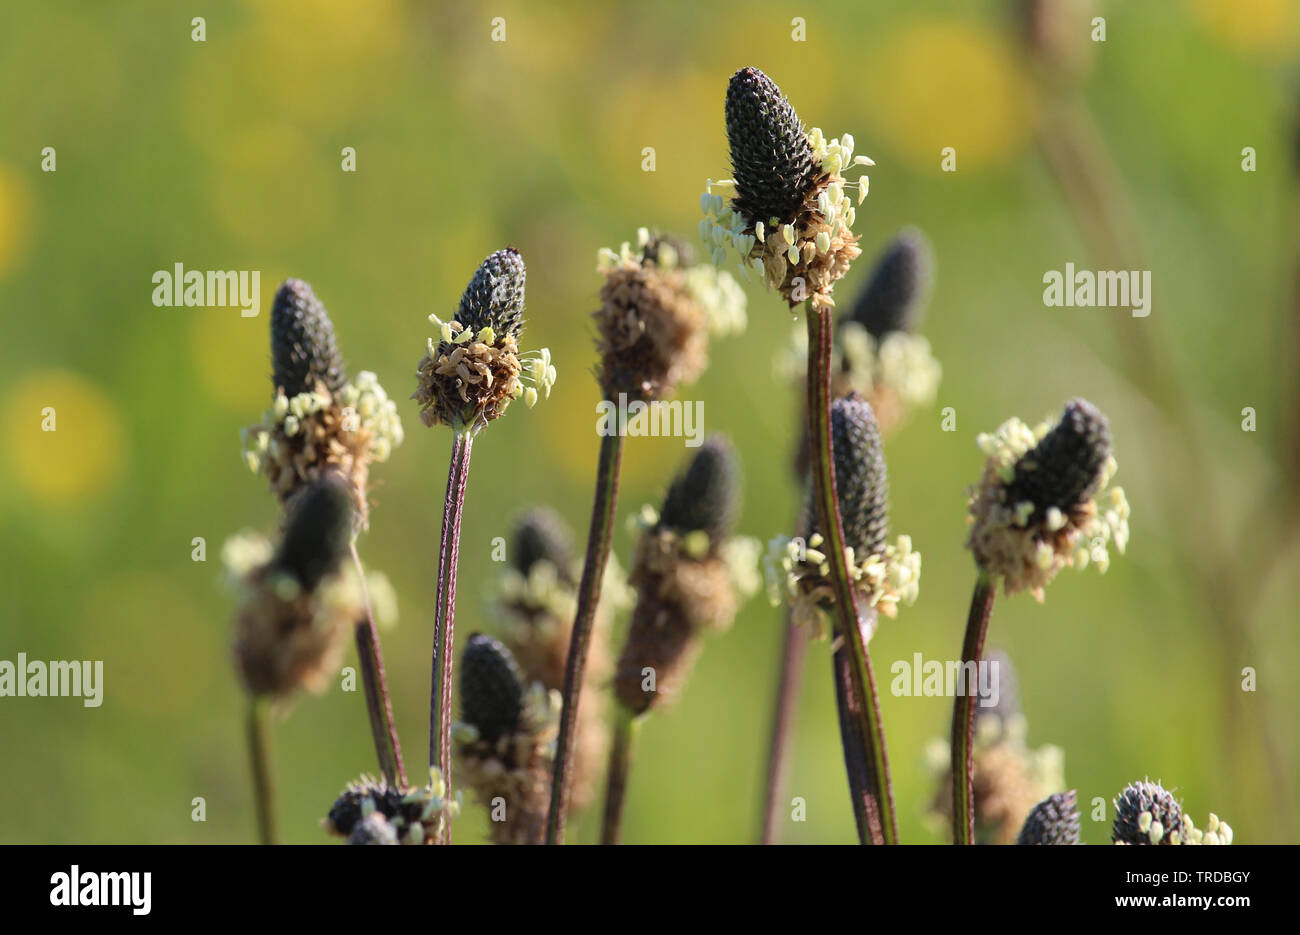 Die ungewöhnlichen Blüten von Plantago Lanzettlichen auch bekannt als Schmale leaved Plantain. Draußen wachsen in einer natürlichen Umgebung. Stockfoto